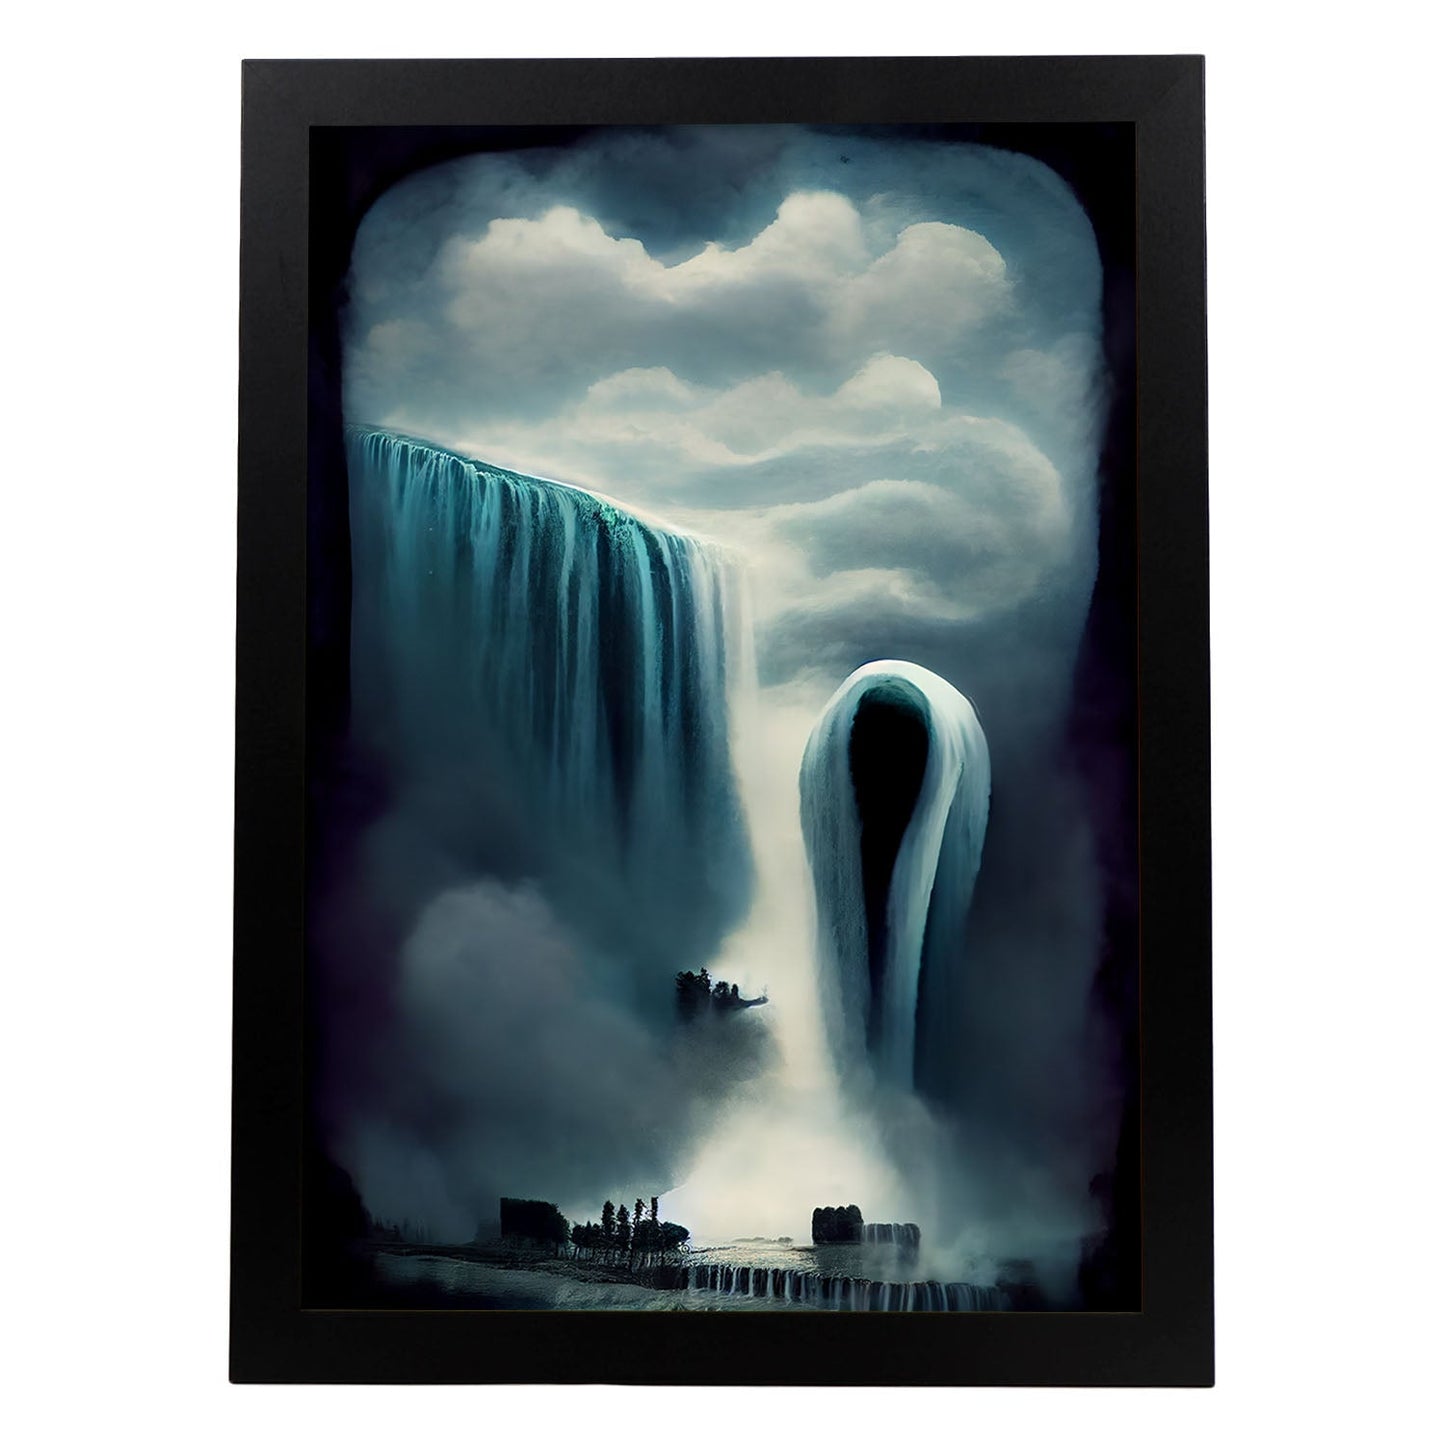 Nacnic Lámina Cataratas Niagara Curioso al estilo de T. Burton. Ilustraciones de monumentos, ciudades, paises inspiradas en arte gótico y oscuro. Diseño y Decoración de Interiores.-Artwork-Nacnic-A4-Sin marco-Nacnic Estudio SL